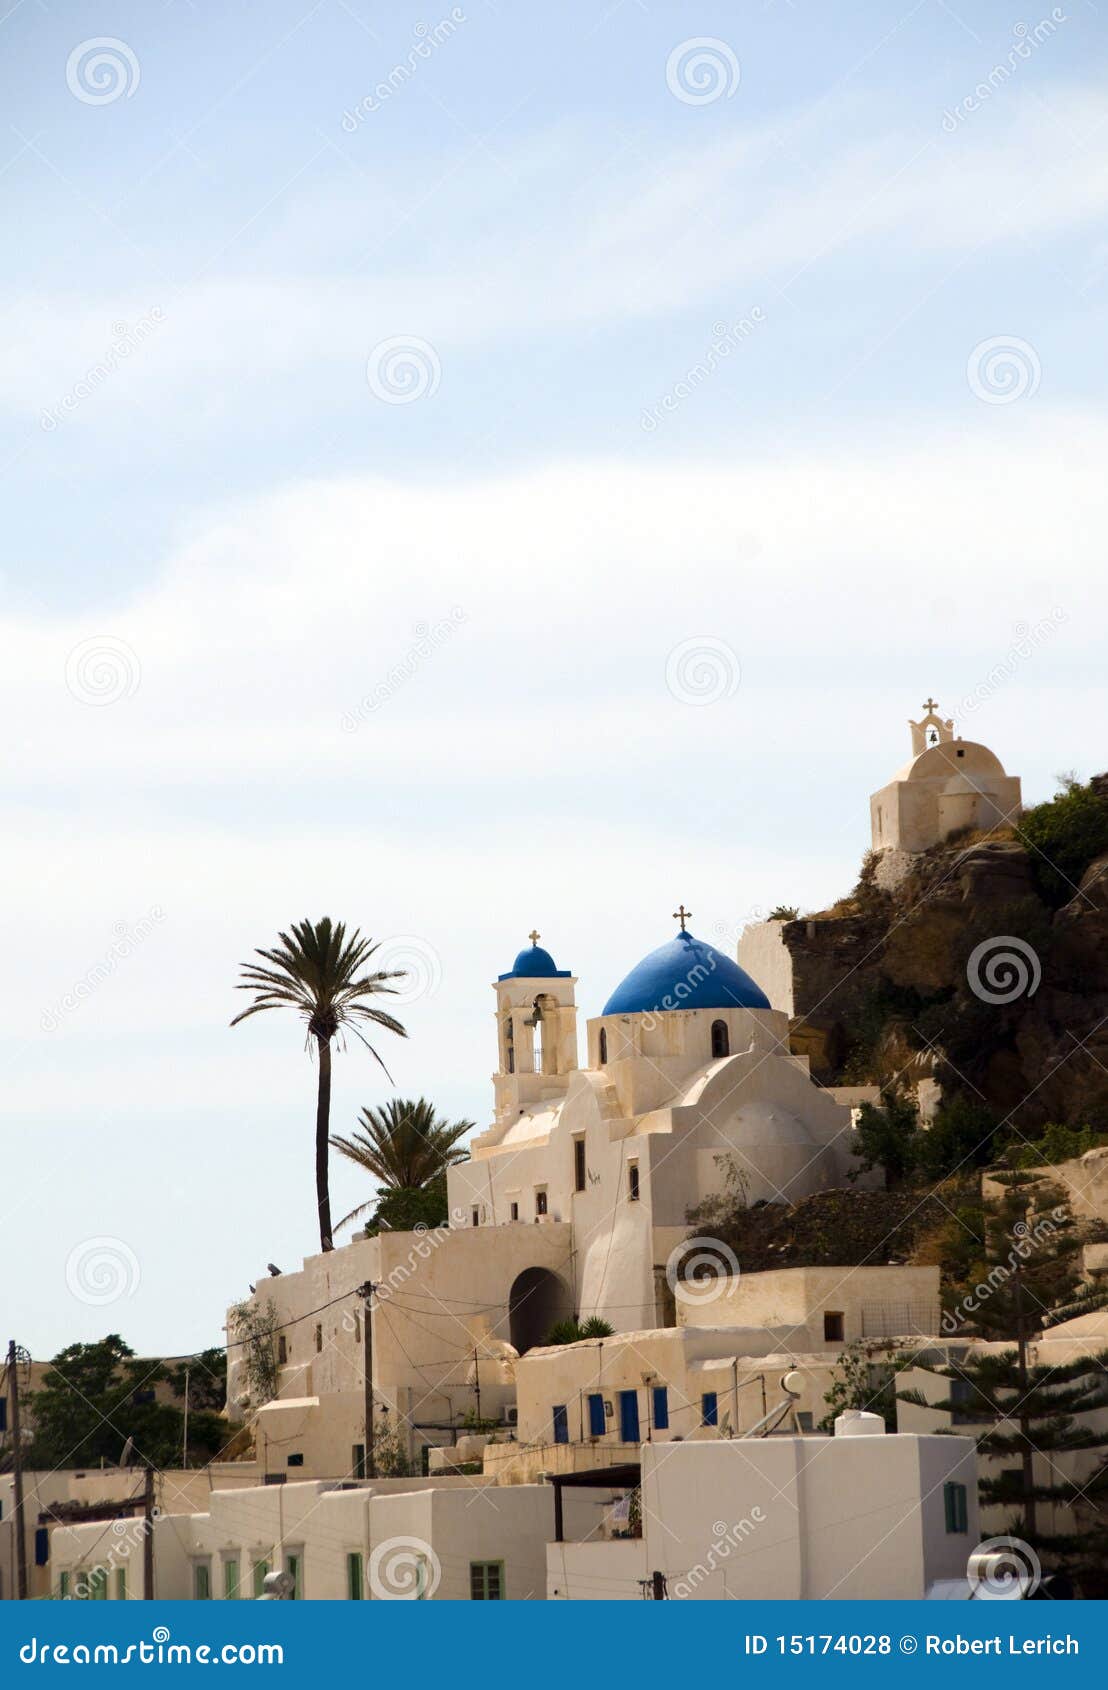 greek island church blue dome ios cyclades islands